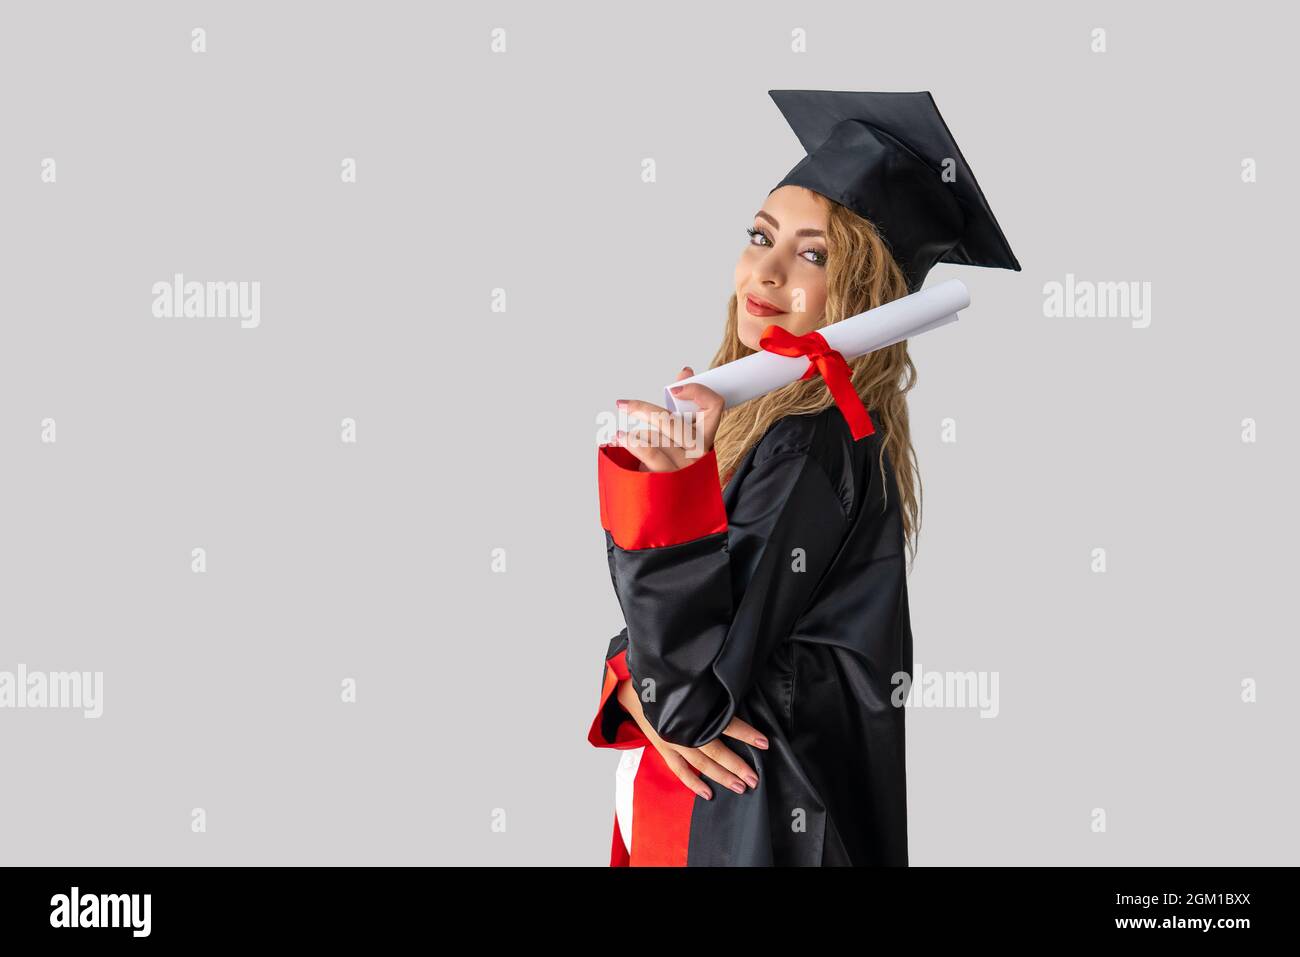 Eine hübsche Studentin, die ihren Abschluss feiert und vor einer weißen Wand steht und ihr Diplom mit Erfolg hält. Hochwertige Fotos Stockfoto